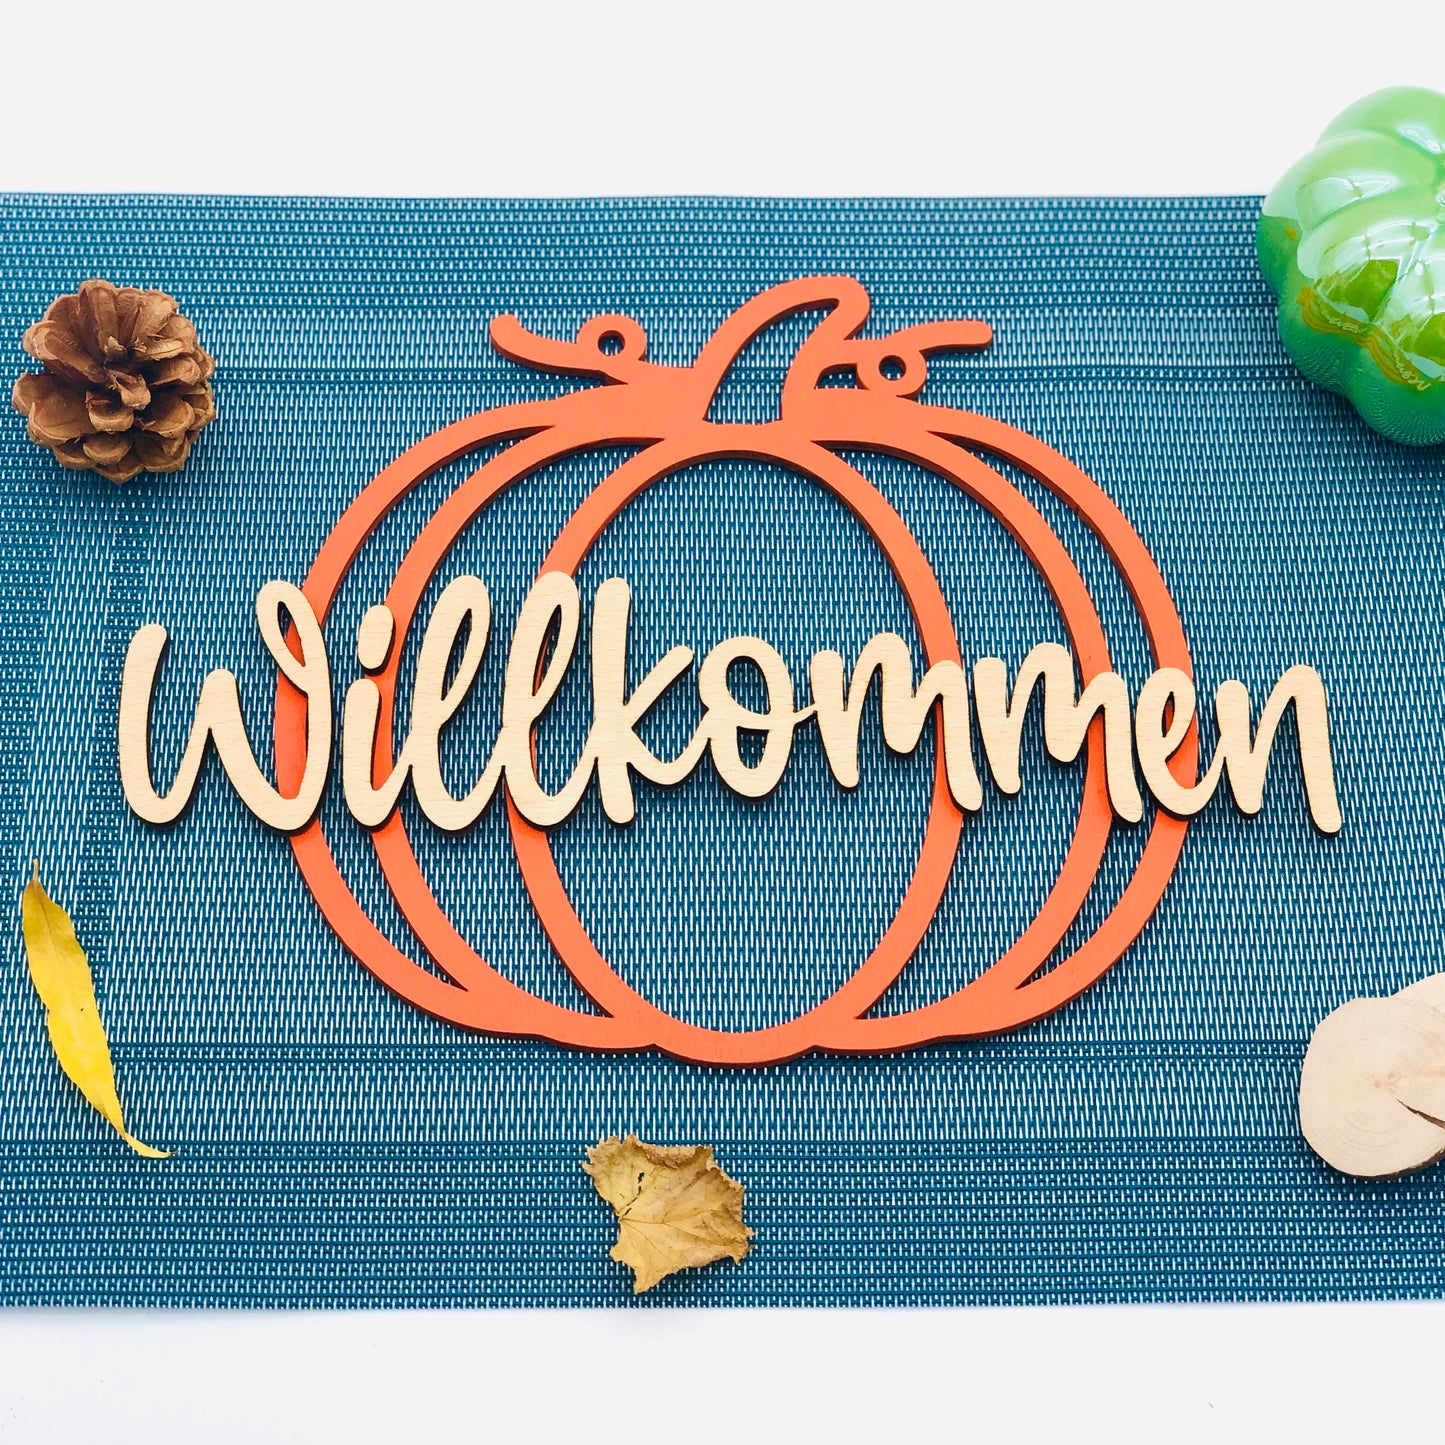 Kürbis Schild Willkommen - Herbst Holzschild Welcome - Herbstdekoration Schild zum Aufhängen - Geschenkidee Herbst - Farmhouse Herbstdeko